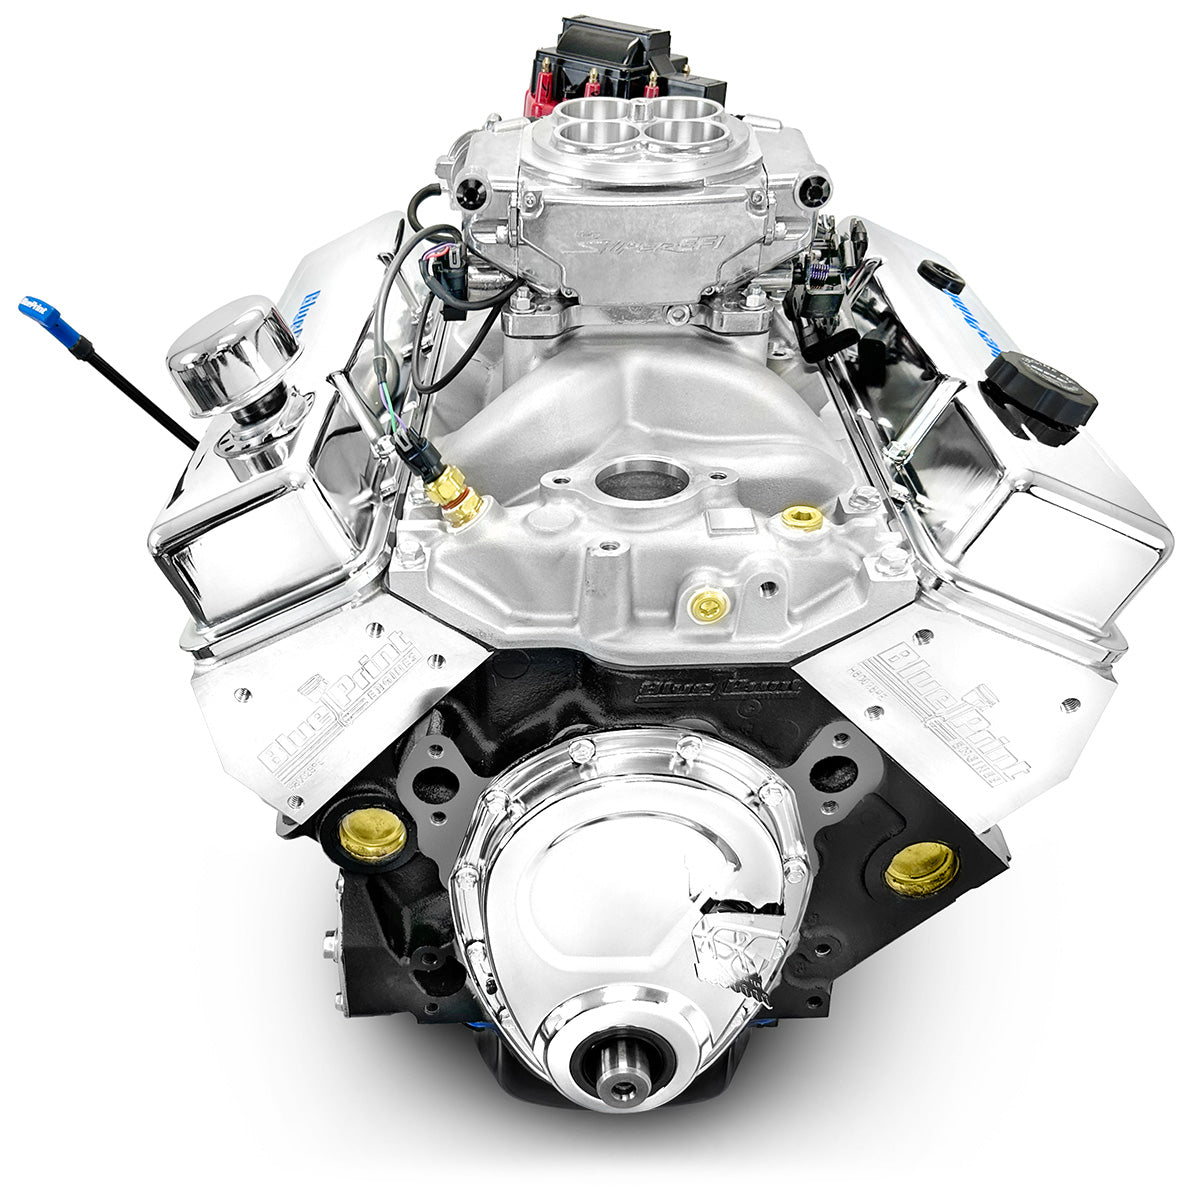 GM SB Compatible 383 c.i. Engine - 436 HP - Base Dressed - Fuel